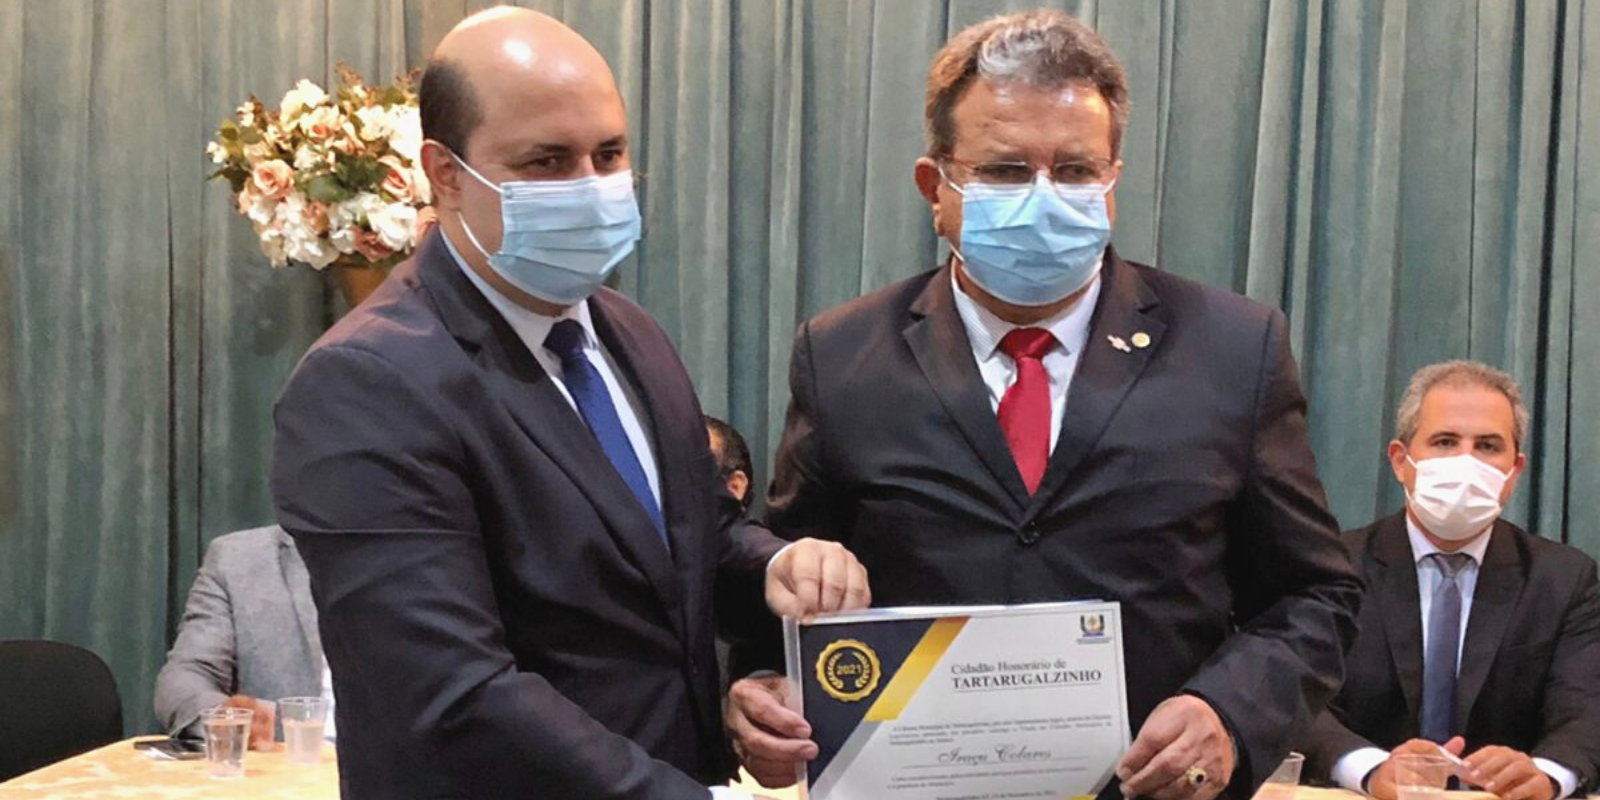 Iraçu Colares recebe o ‘Título de Cidadão Honorário de Tartarugalzinho’ na sessão de encerramento do ano legislativo